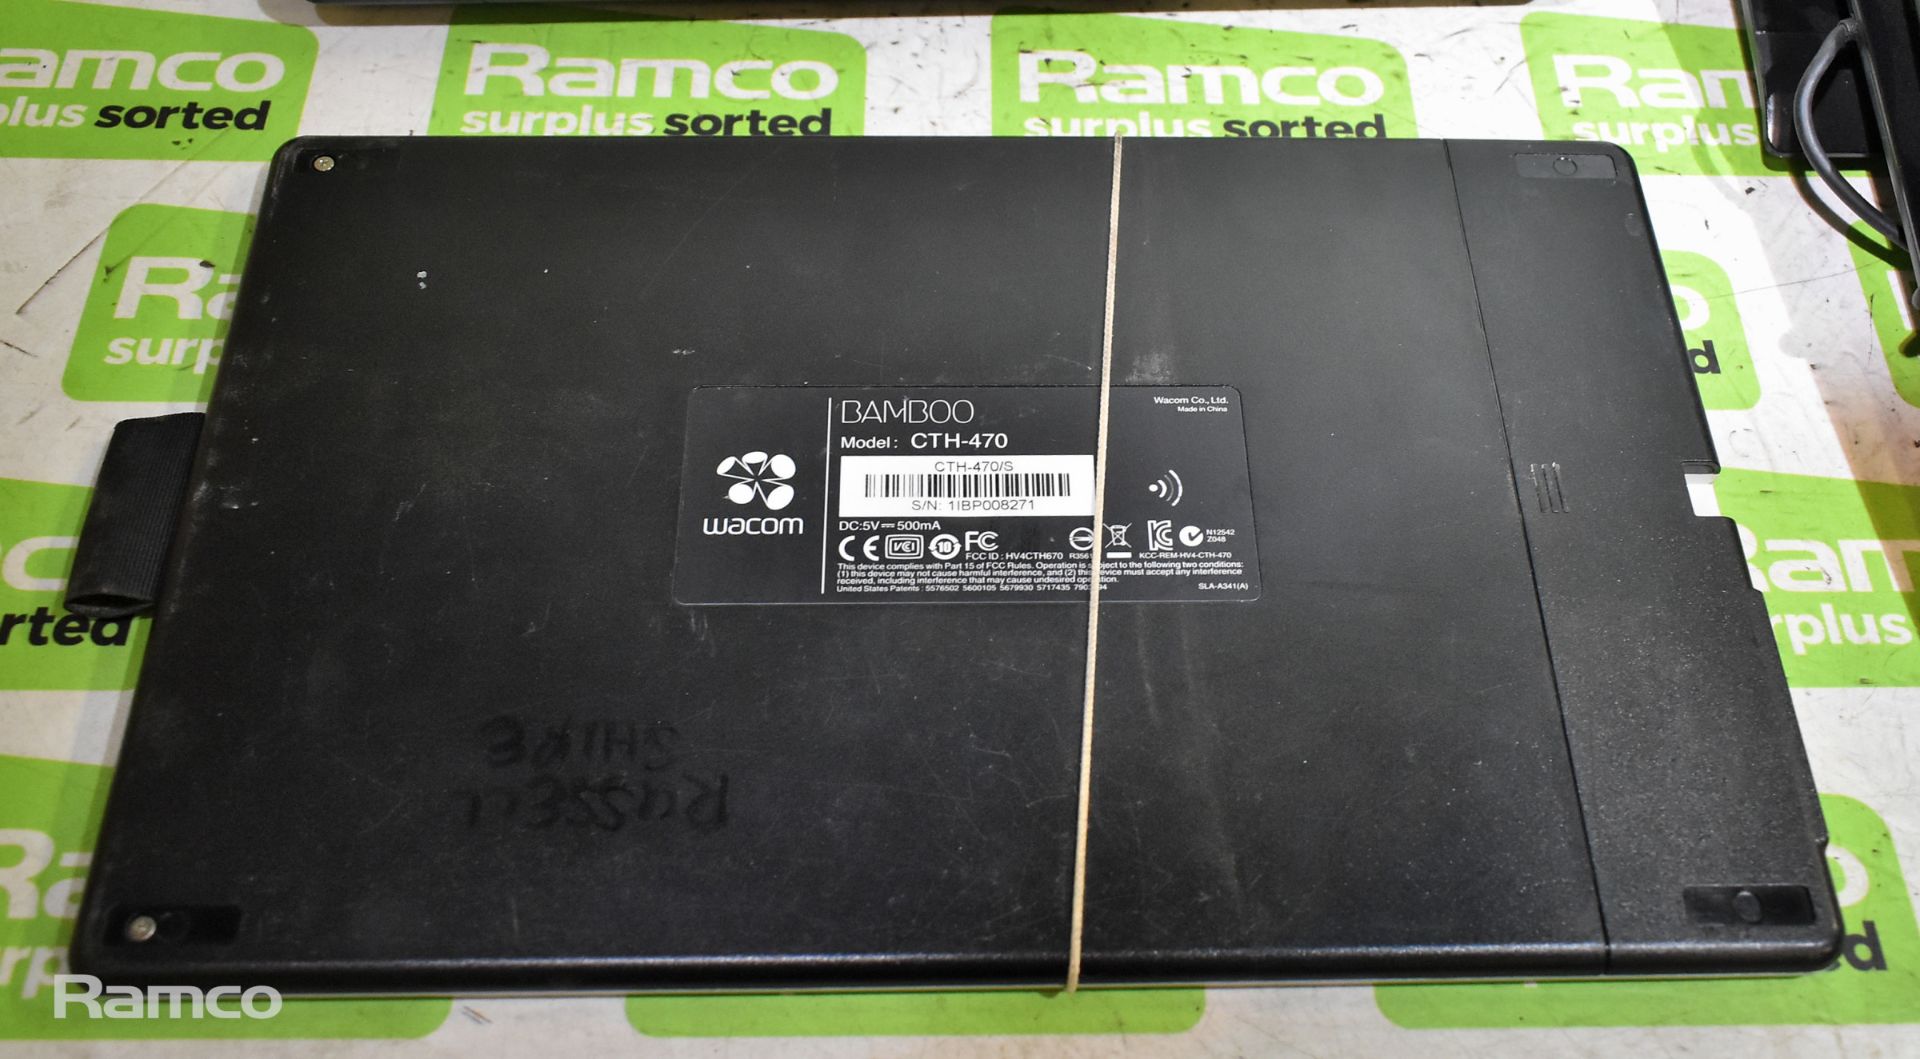 2x Wacom Bamboo CTH-470 graphics tablets, Wacom Bamboo CTH-470 graphics tablet (missing pen) - Image 3 of 6